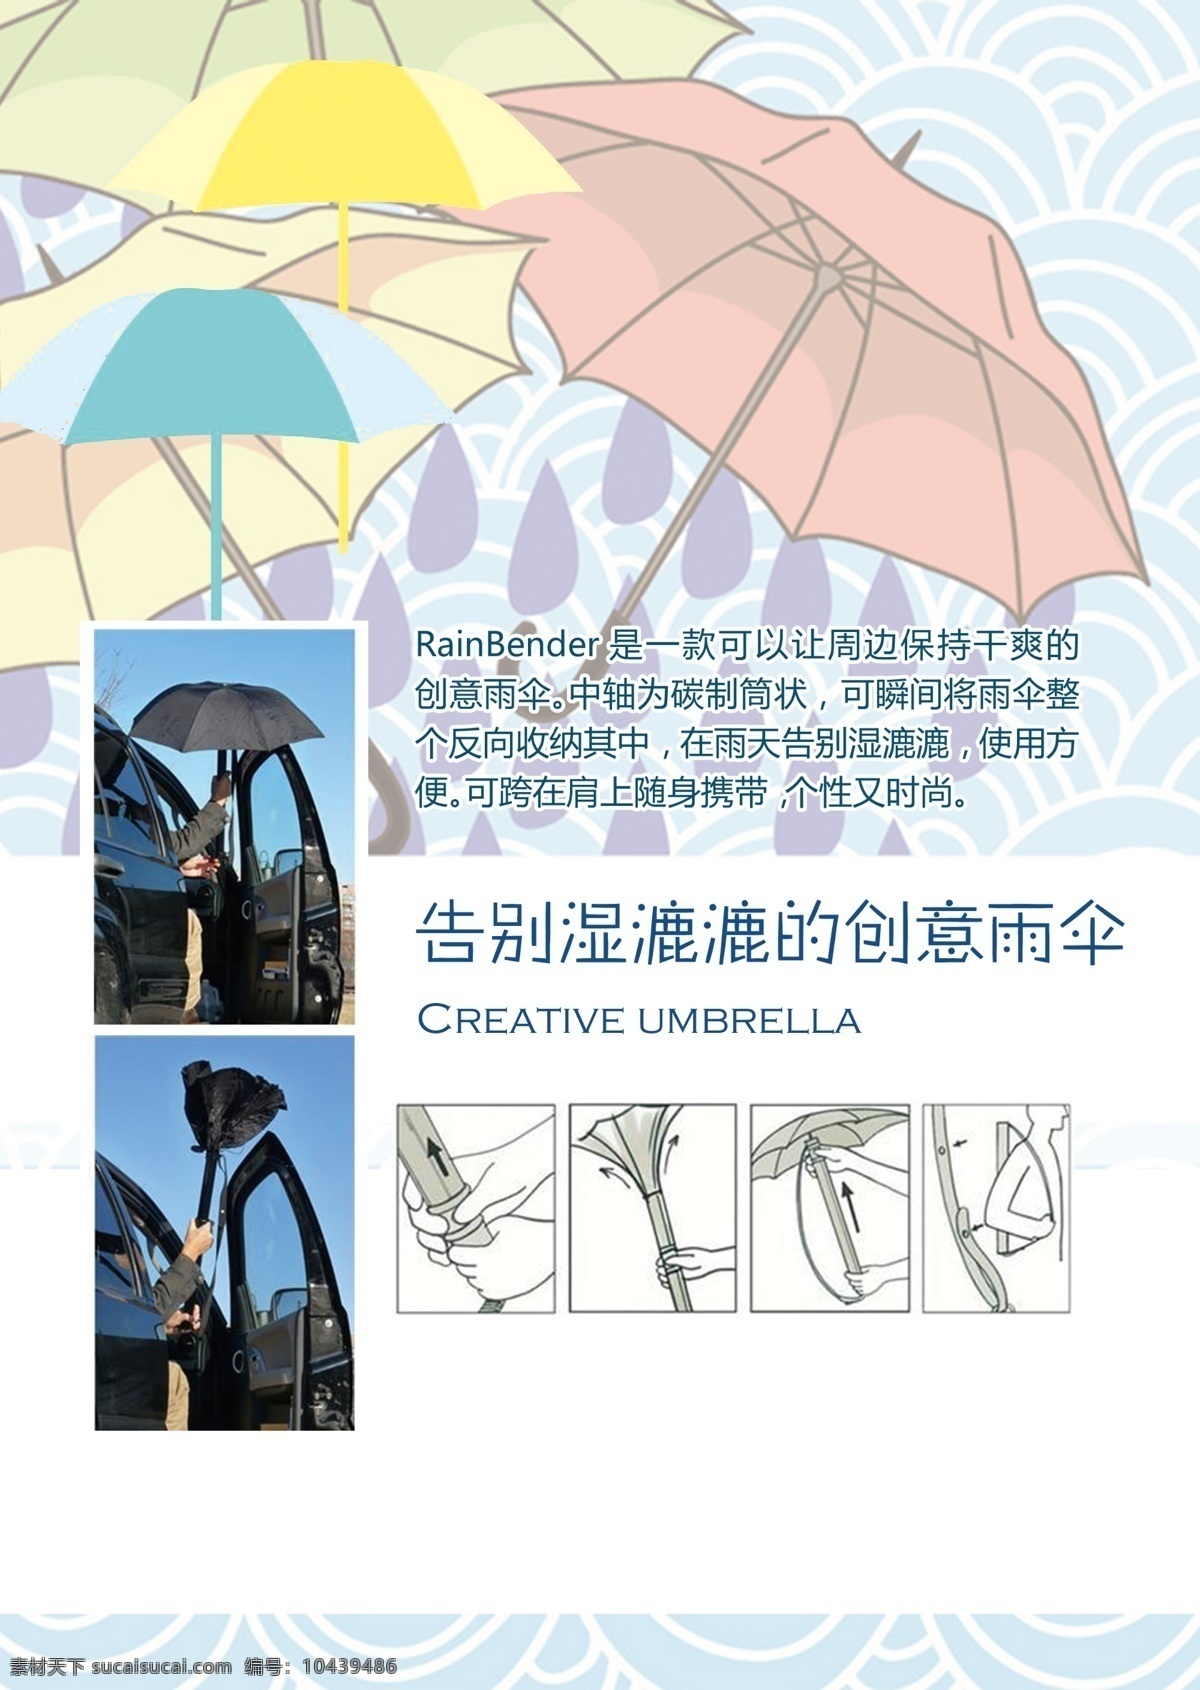 告别 湿漉漉 创意 雨伞 彩色 手绘 雨滴 重复样纹 圈圈 示意图 七彩 白色